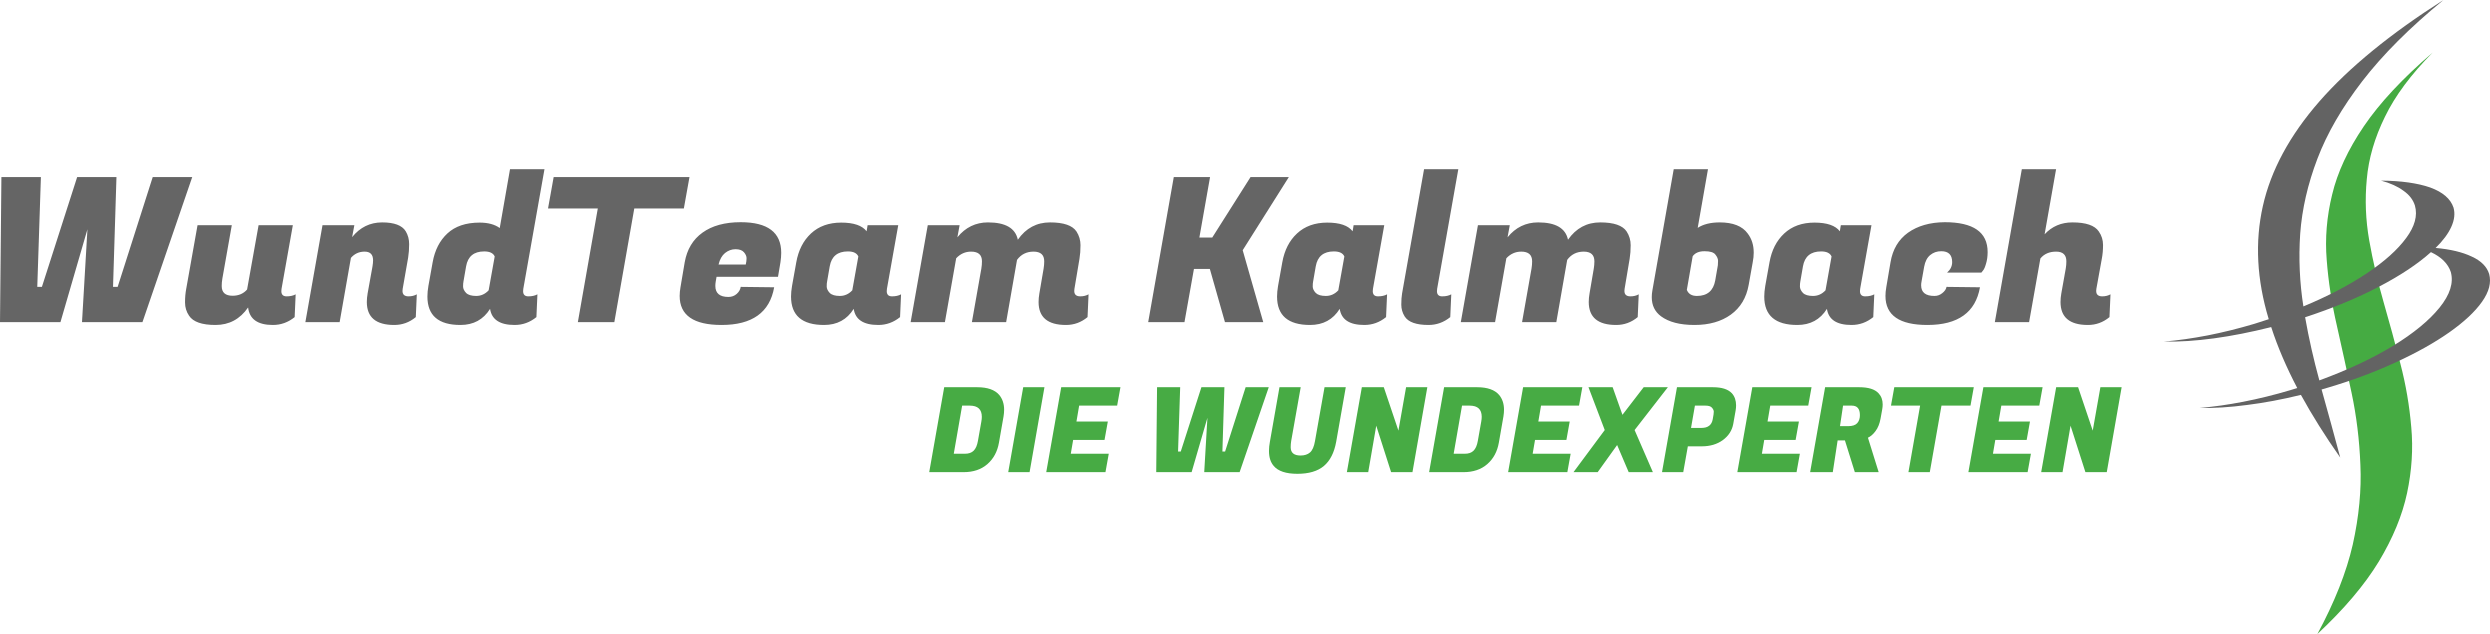 WundTeam Kalmbach